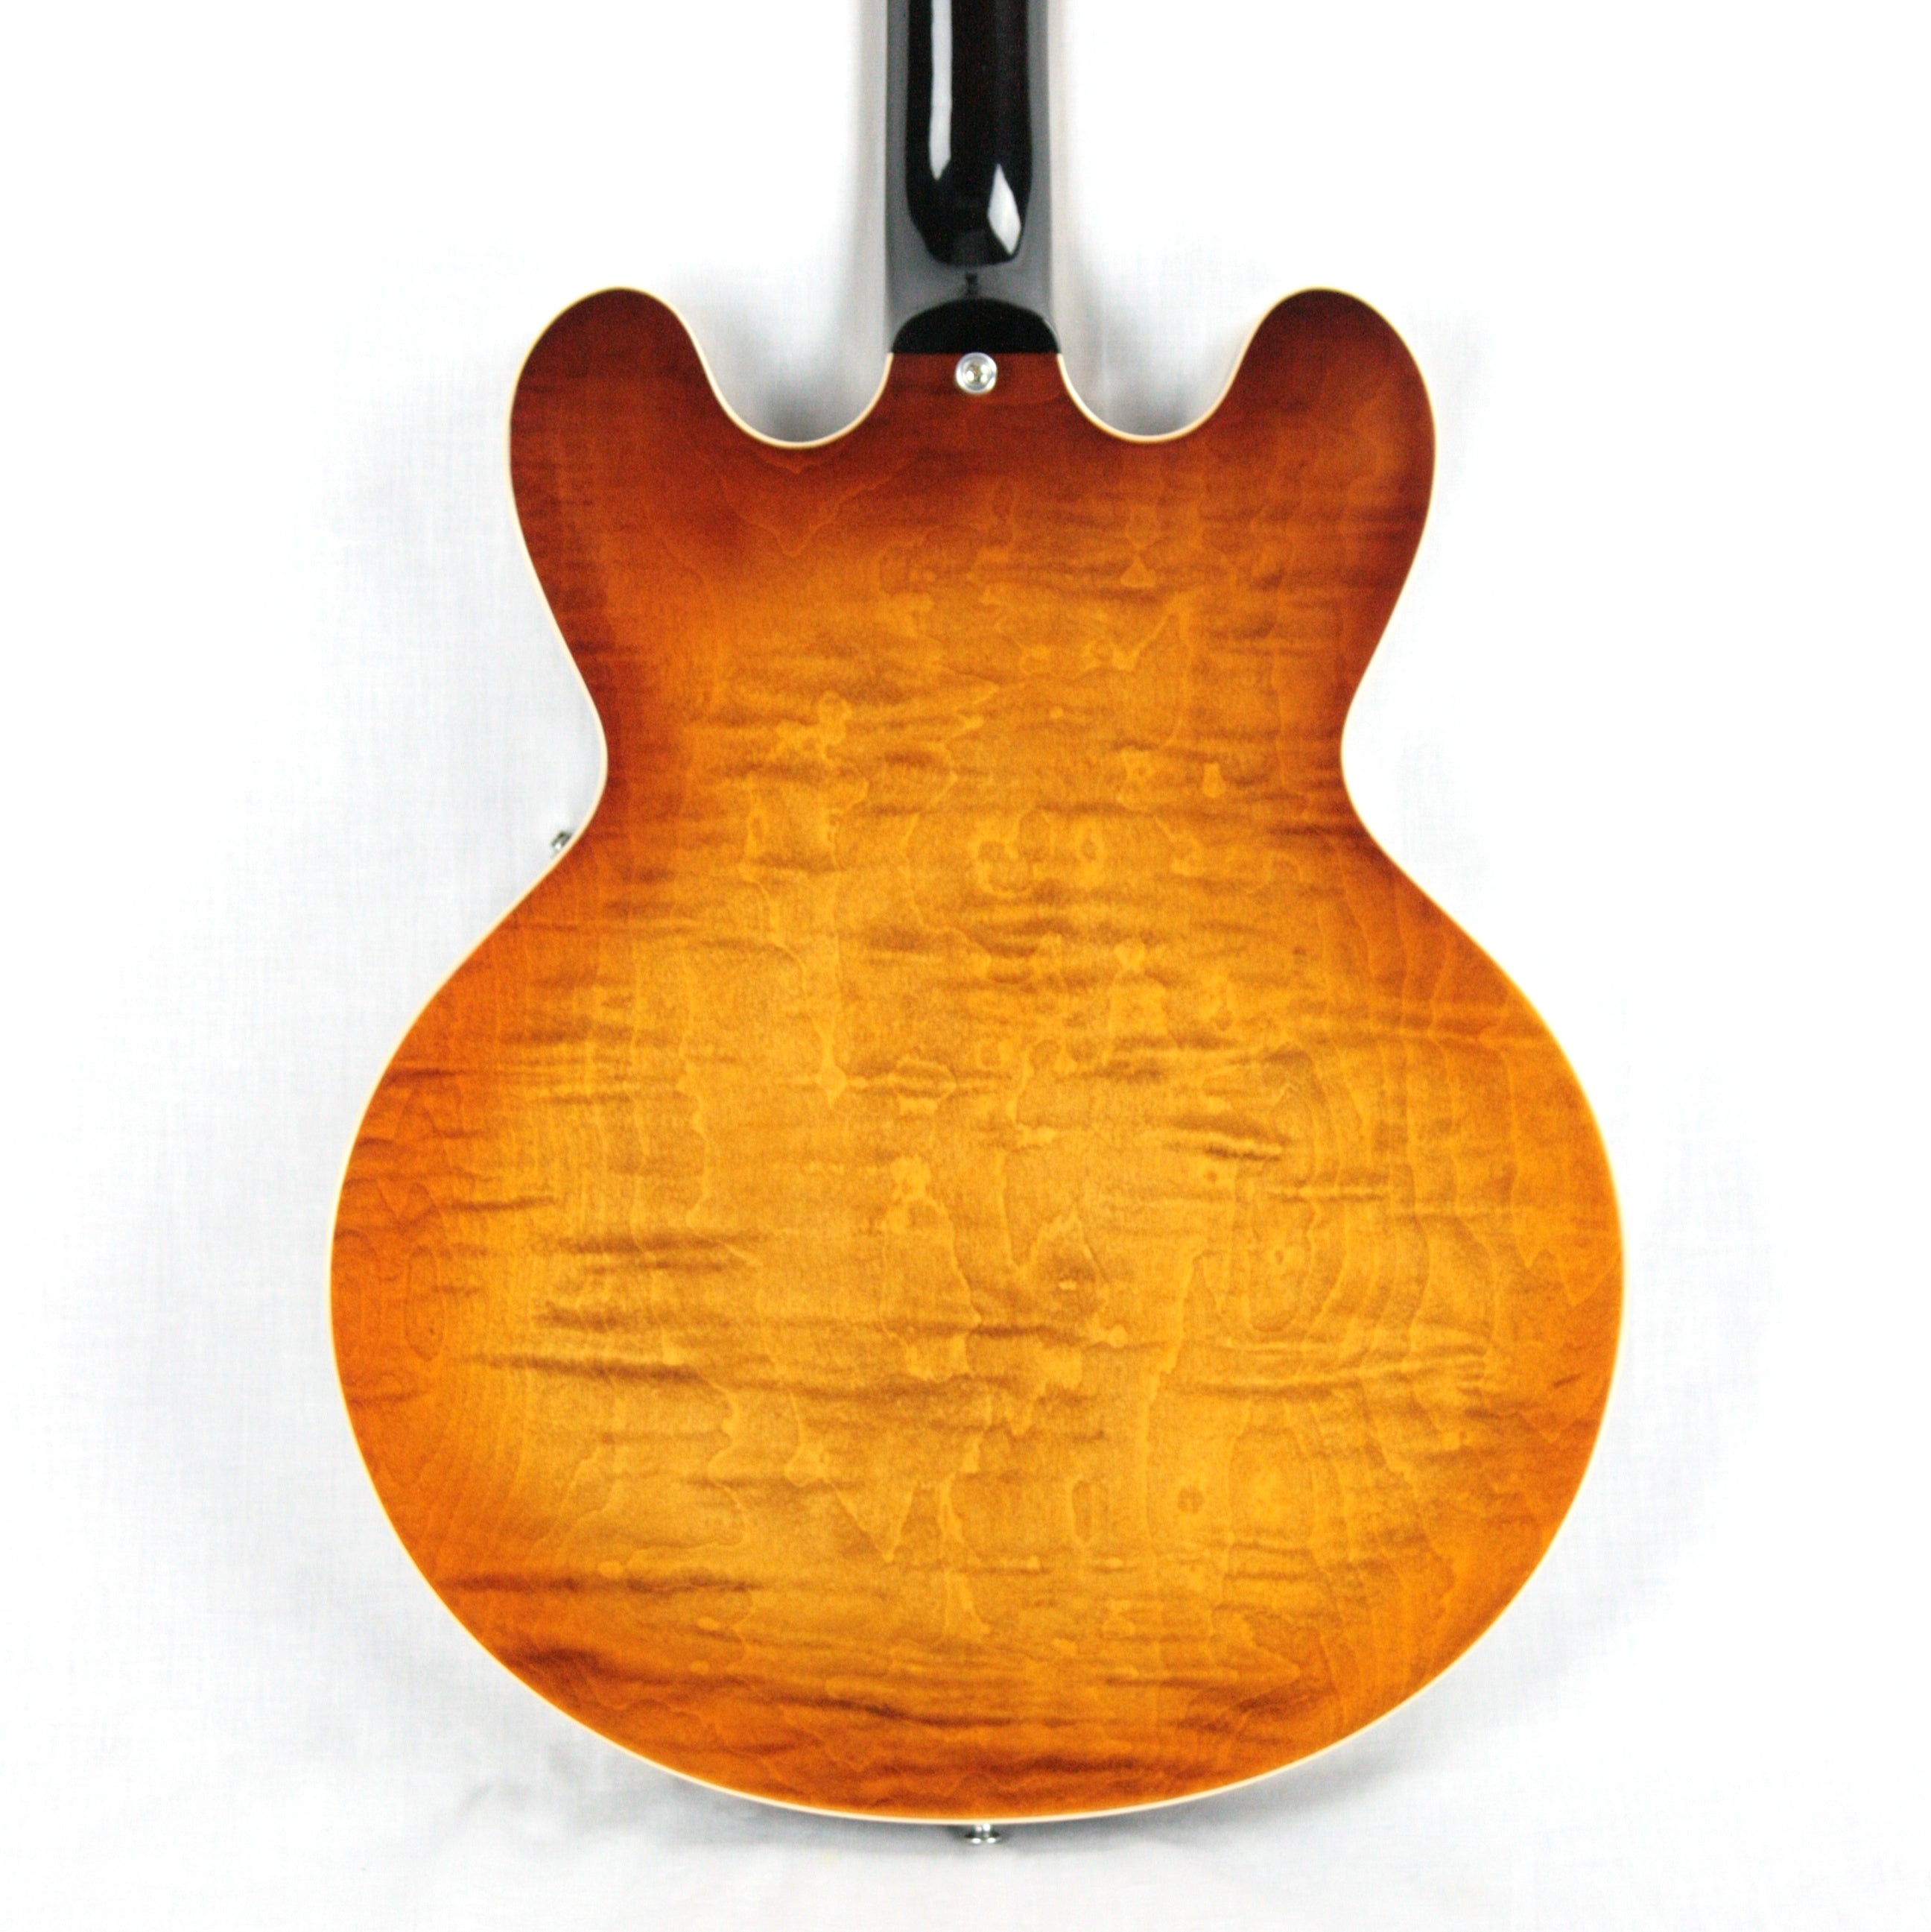 *SOLD*  2017 Gibson ES-335 FIGURED Fade Light Burst Flametop! Block inlays! Memphis 345 355